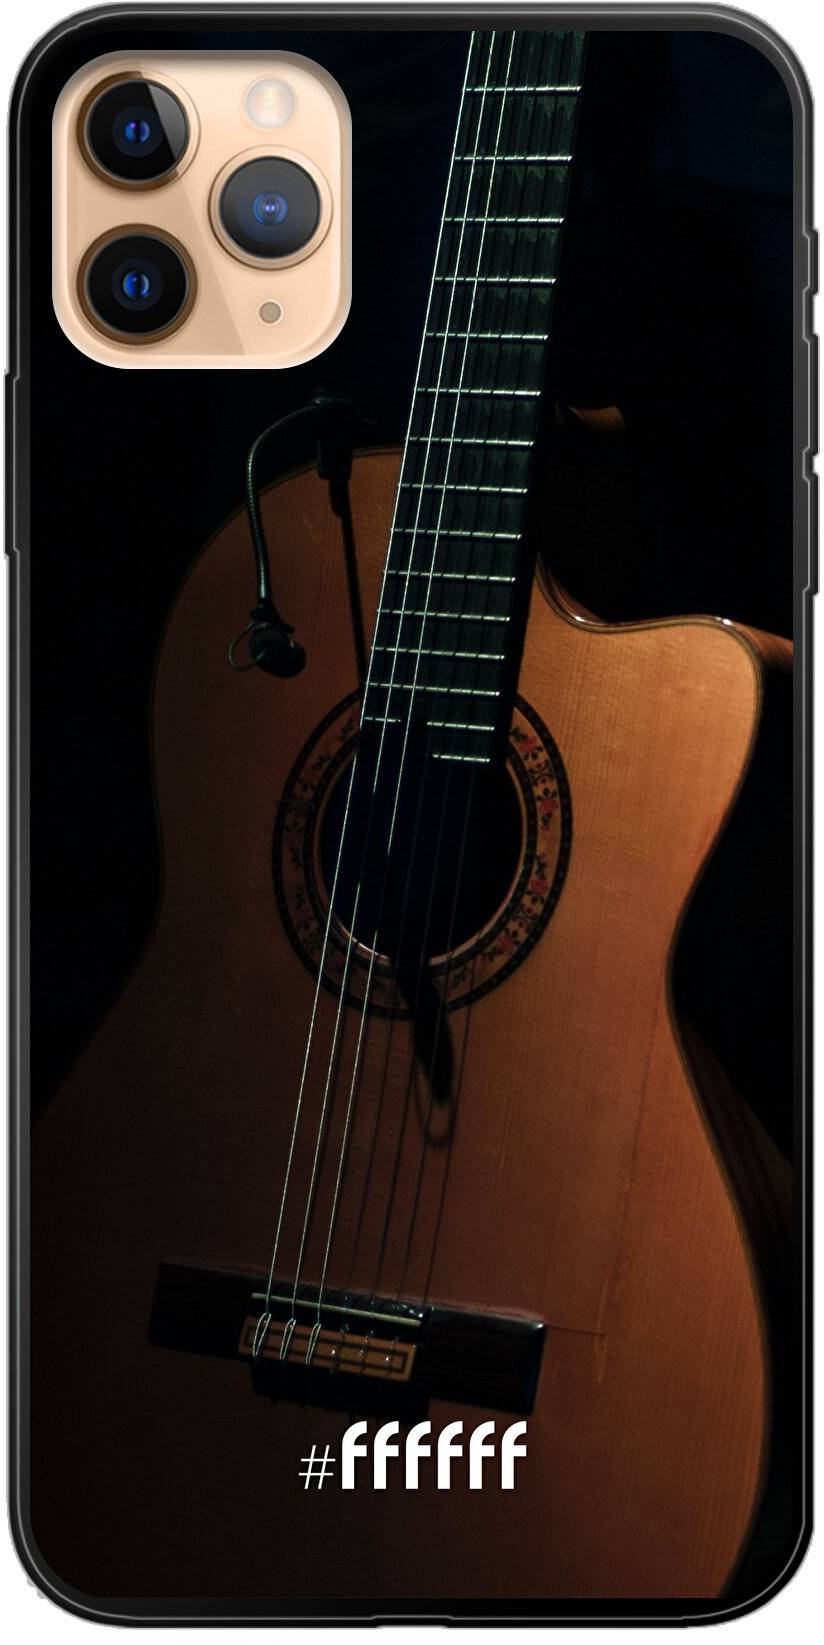 Guitar iPhone 11 Pro Max